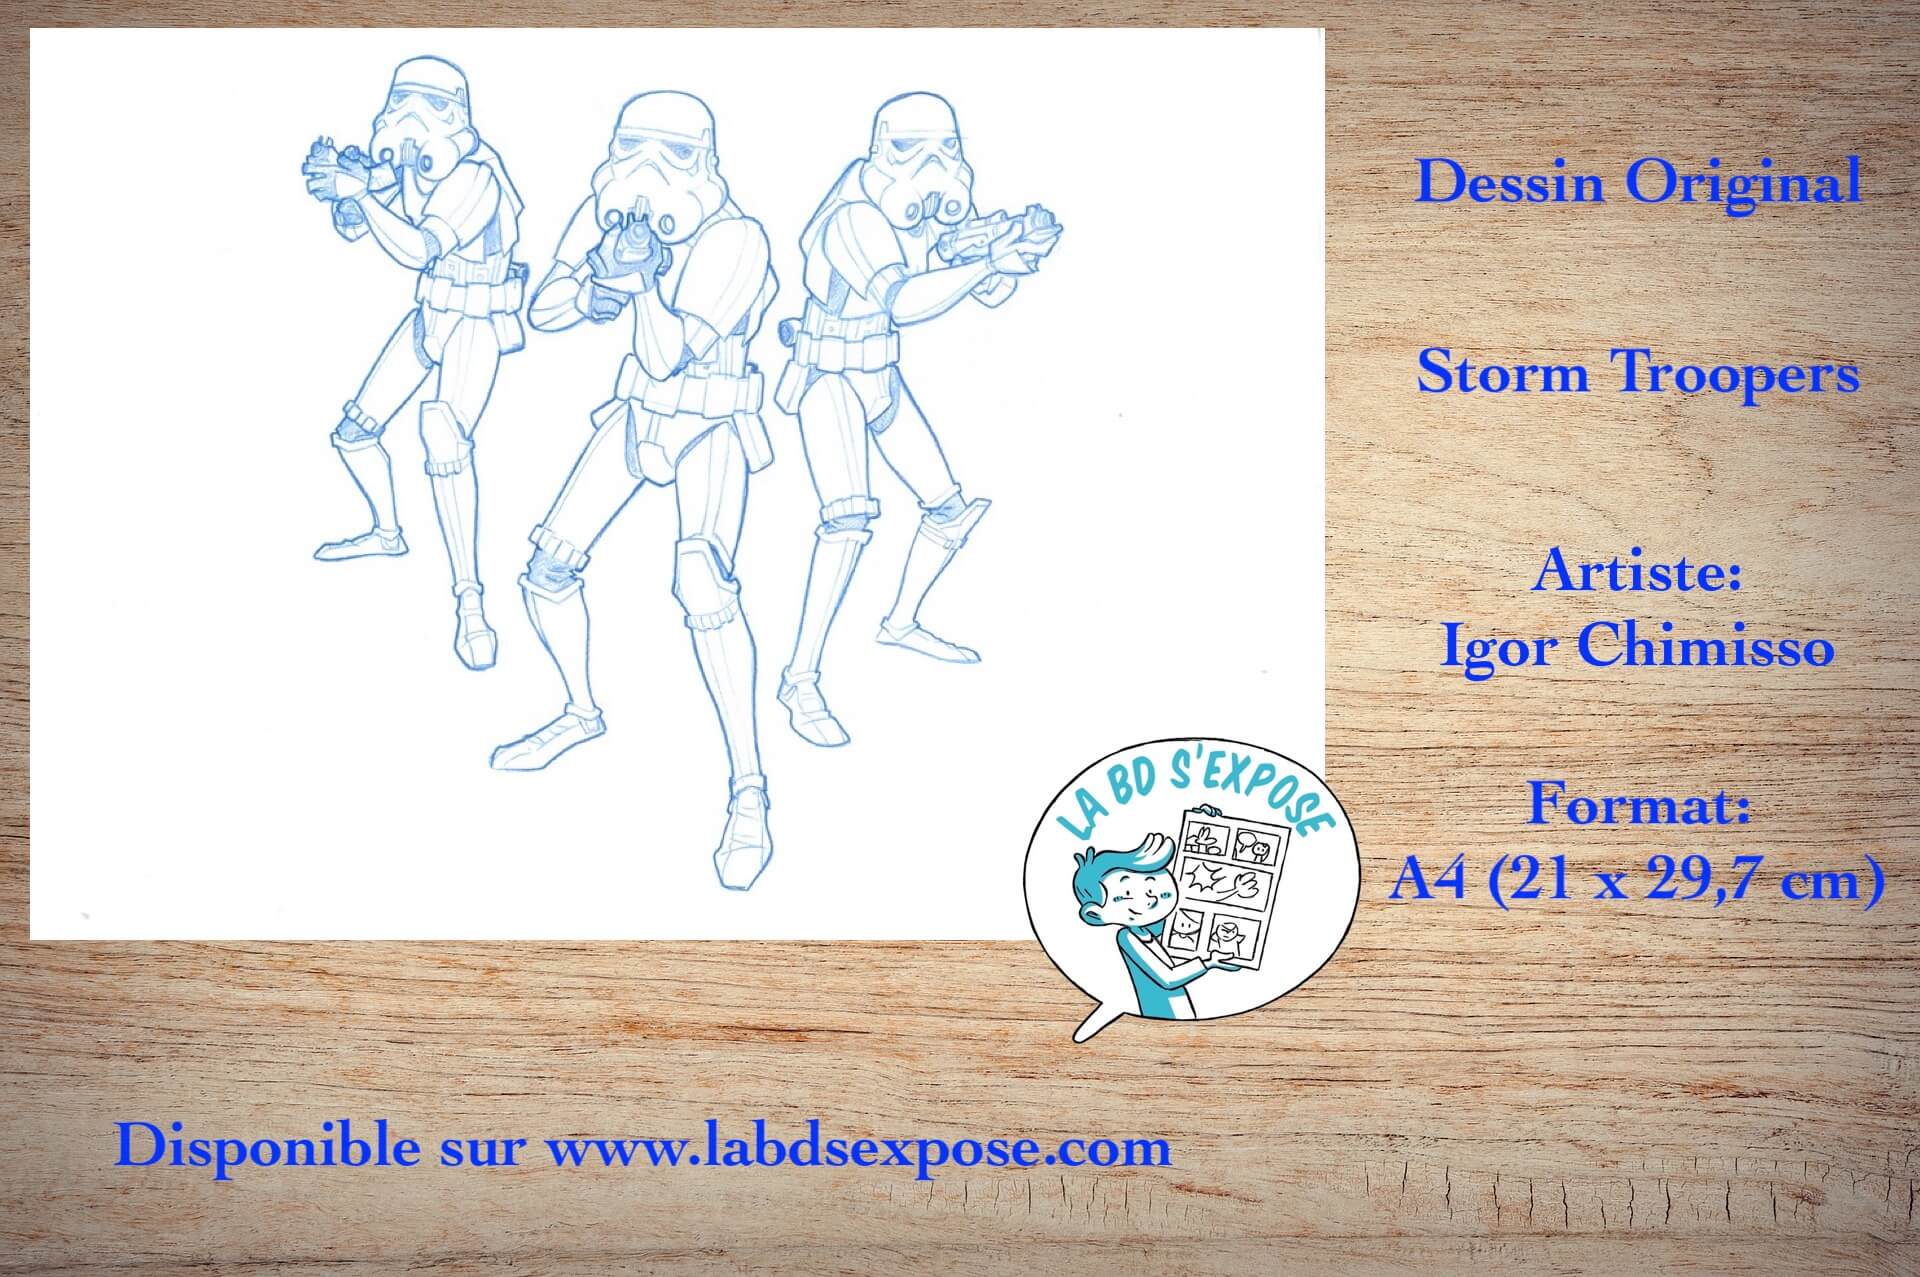 Réseaux Dessin Original de bandes dessinées Storm Troopers 1 Igor Chimisso La BD s'expose